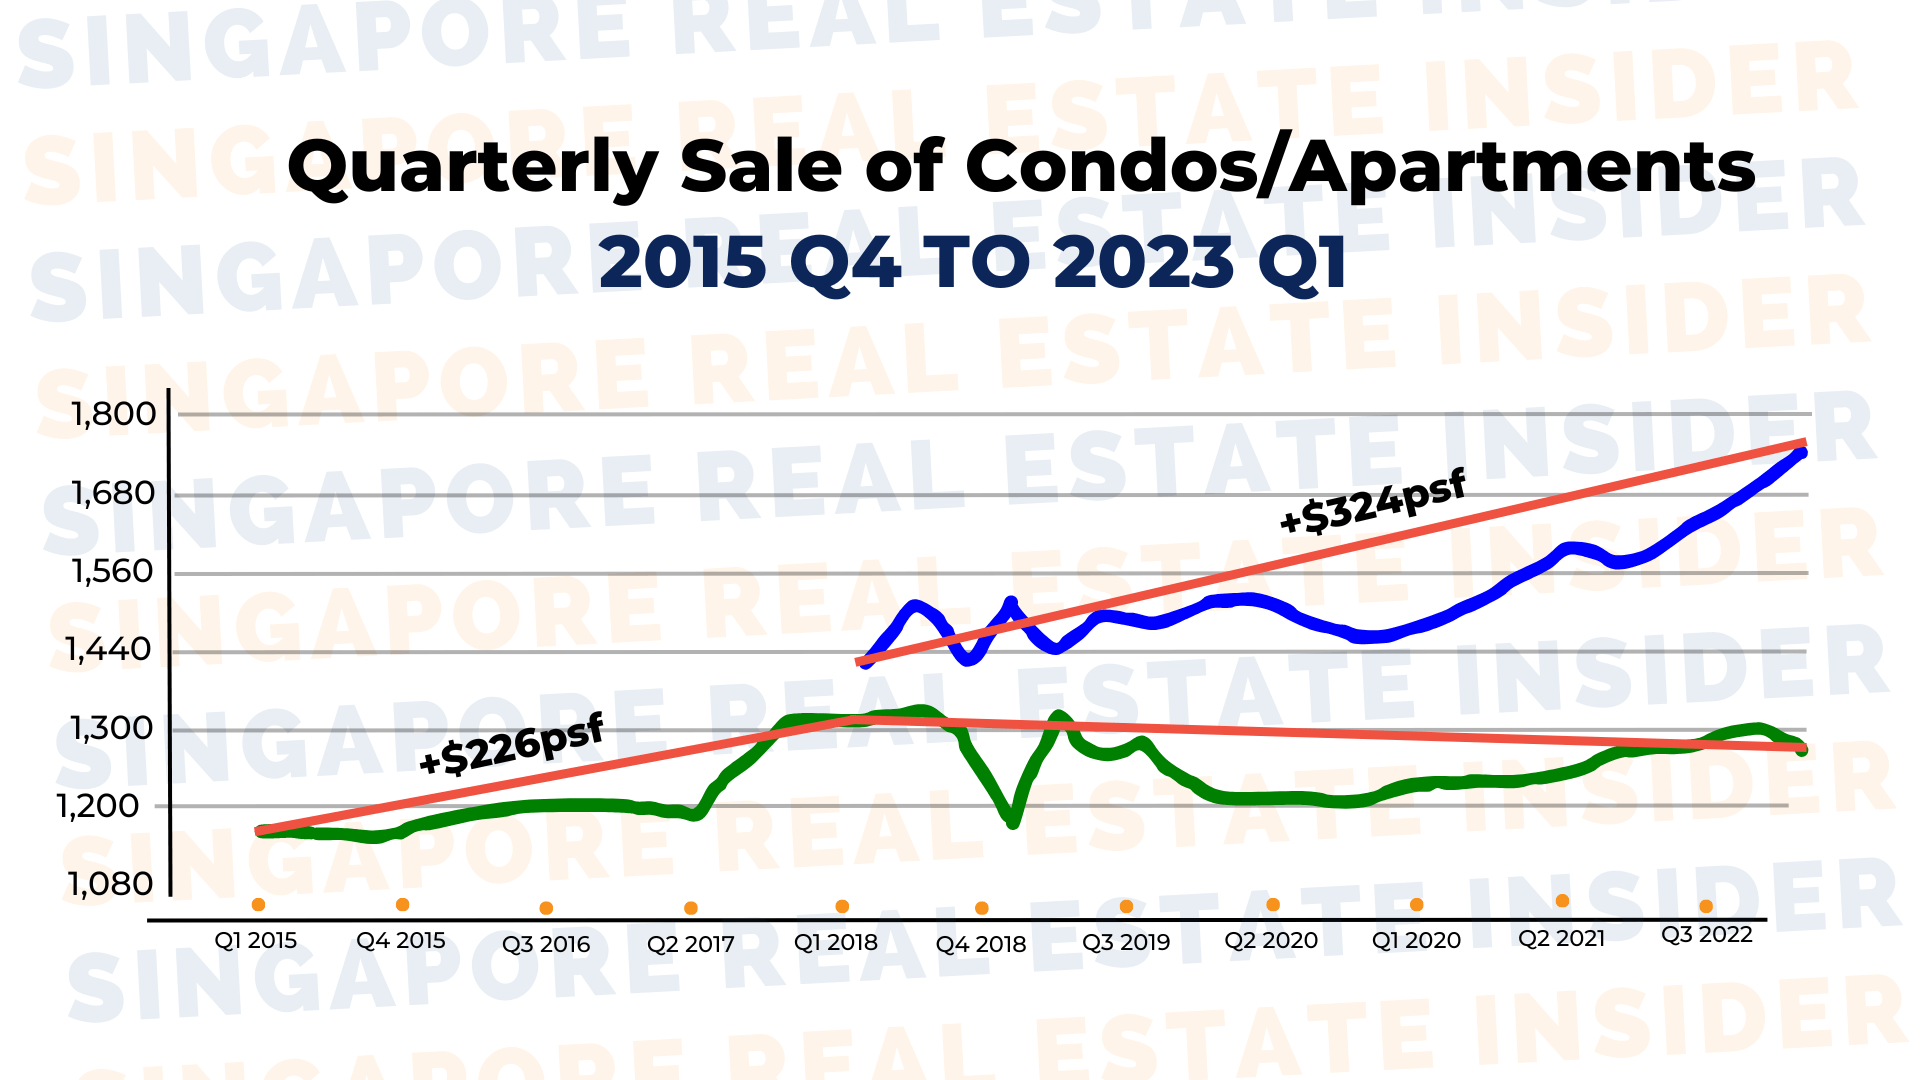 Quarterly Sale of Condos 2015 Q4 to 2023 Q1